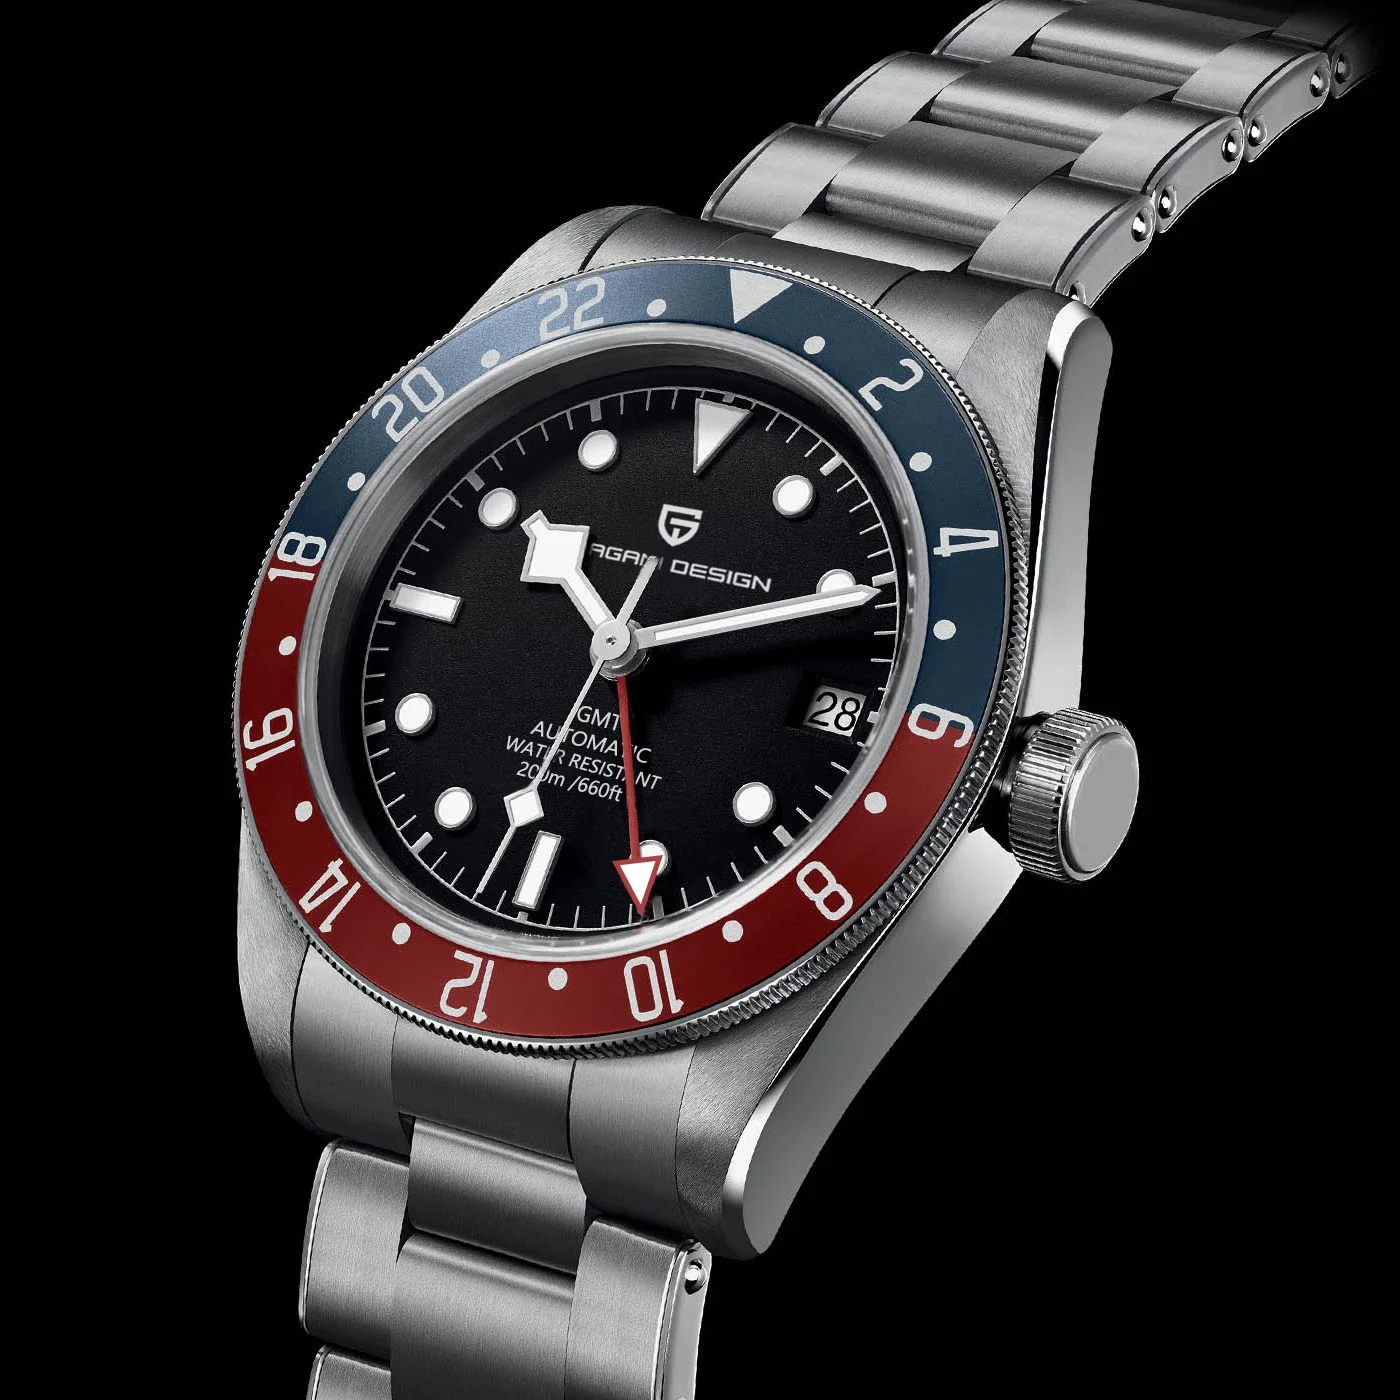 

New BB58 GMT PAGANI DESIGN 1706 Men Automatic Mechanical Wrist Watch Luxury Luminous Sapphire Glass Sport Watch 200M Waterproof, Shown